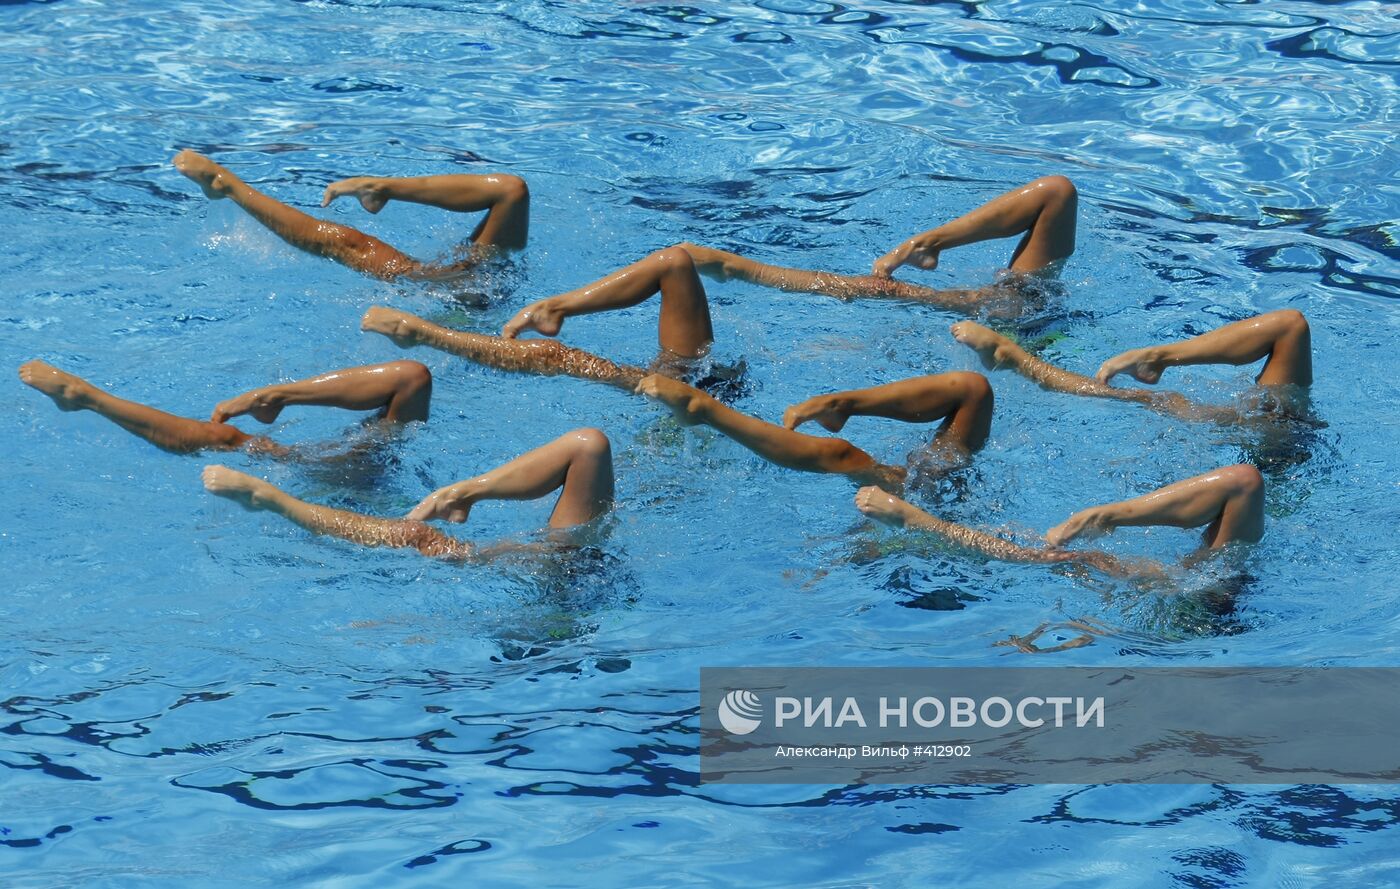 13-ый чемпионат мира по водным видам спорта в Риме